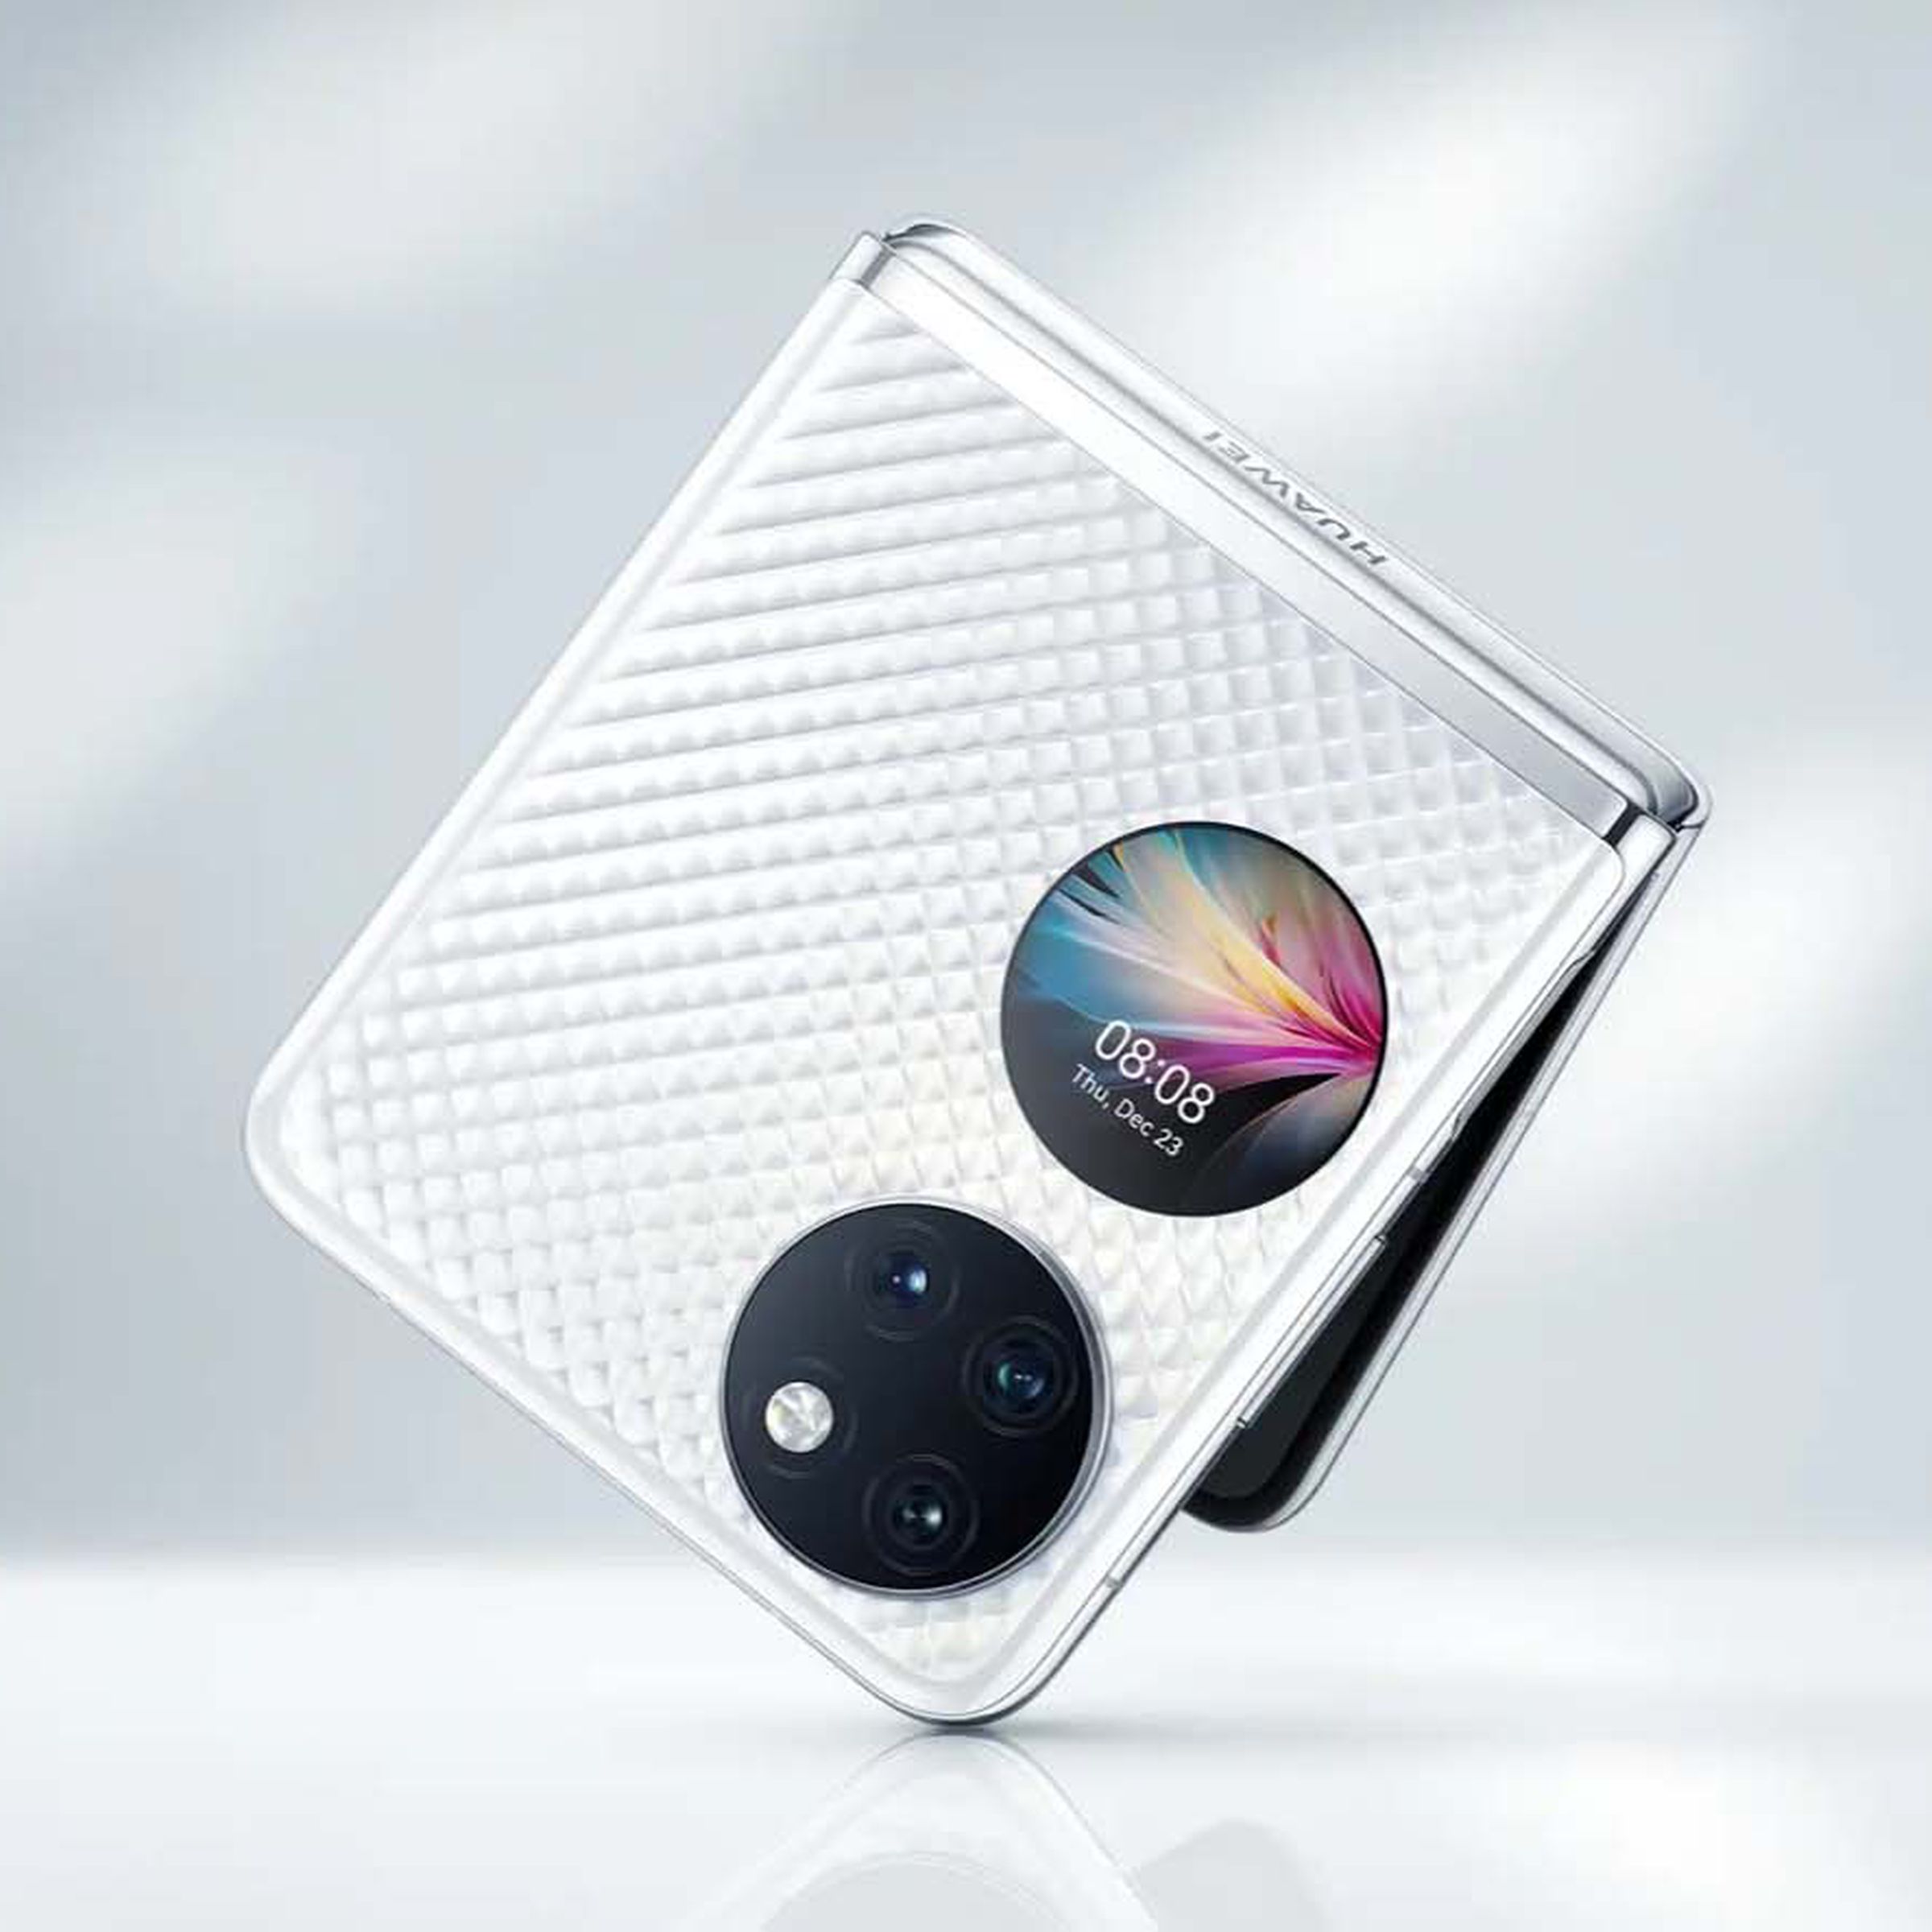 Huawei’s P50 Pocket.